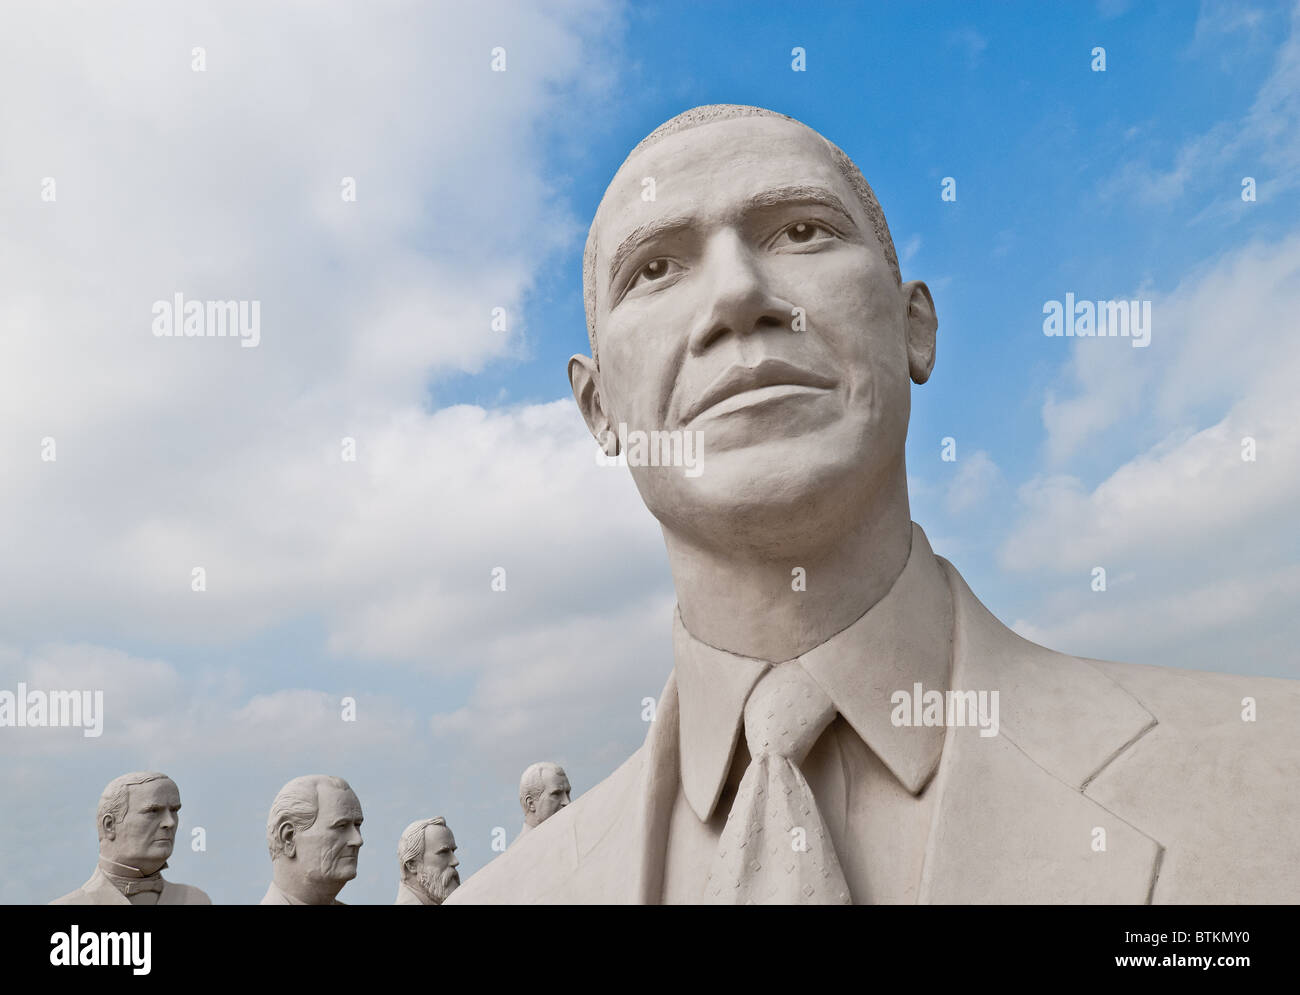 Escultura de hormigón blanco de Barack Obama, el 44º Presidente de Estados Unidos, David Adickes Sculpturworx Studio en Houston, Texas, EE.UU. Foto de stock